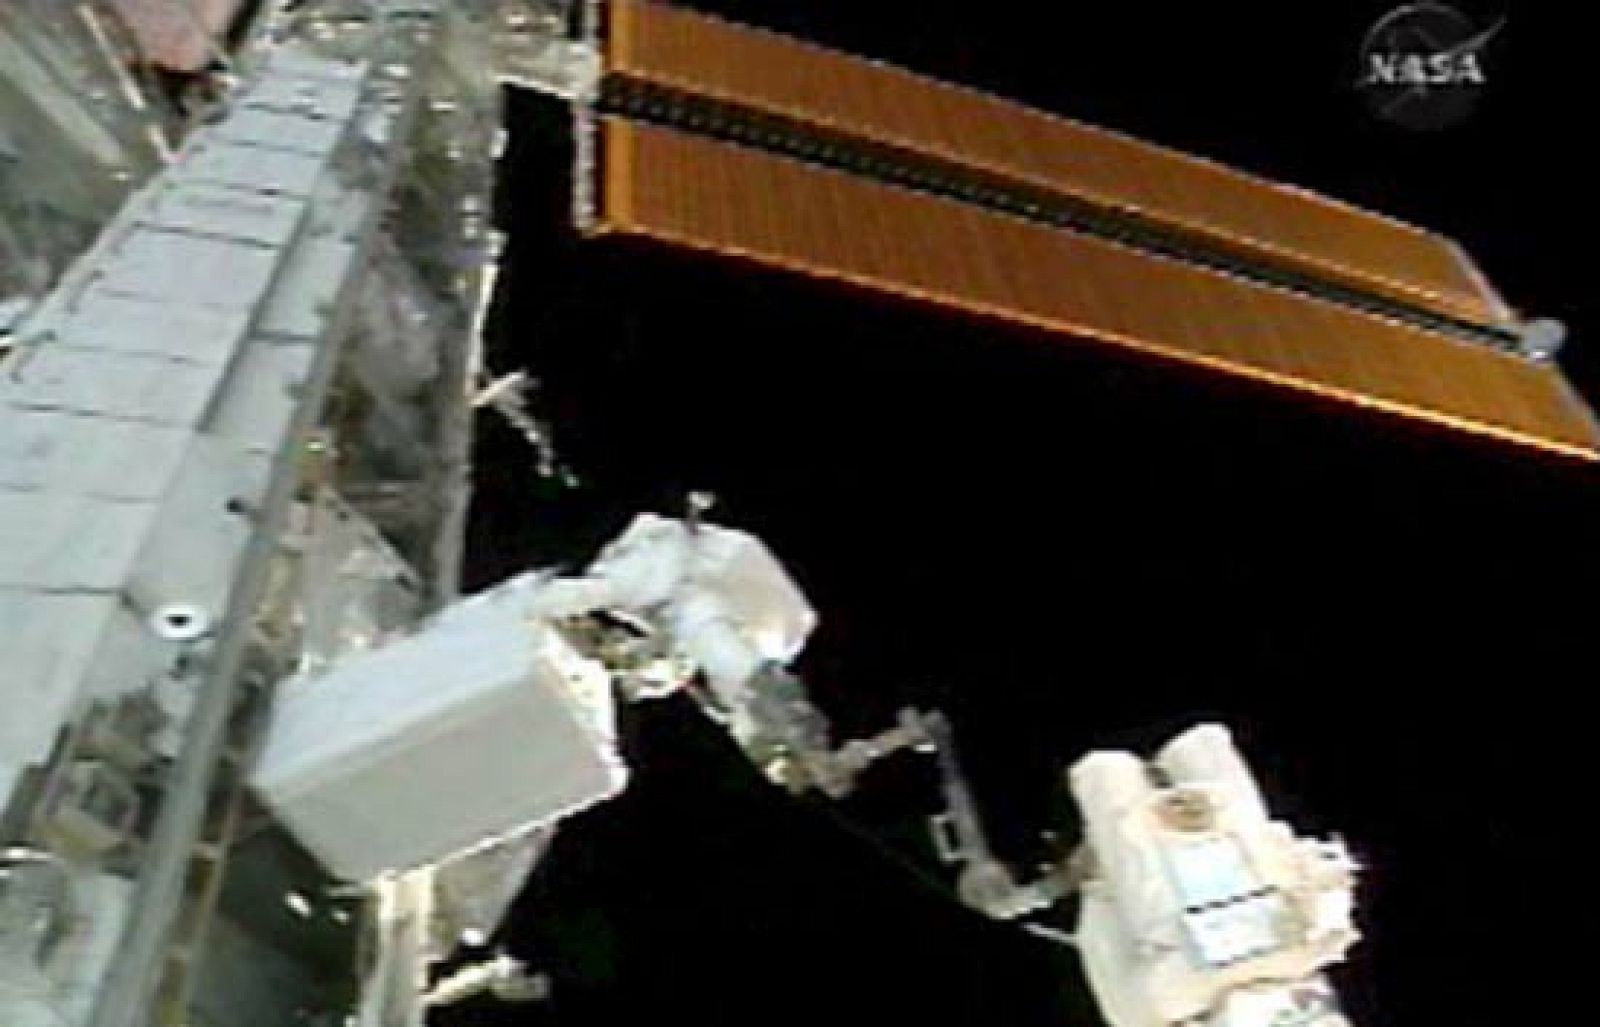 Los astronautas Mike Fossum y Ron Garan han iniciado la tercera y última caminata de la misión del Discovery en la Estación Espacial Internacional (EEI), en la que completarán la instalación del laboratorio "Kibo" y harán labores de mantenimiento.